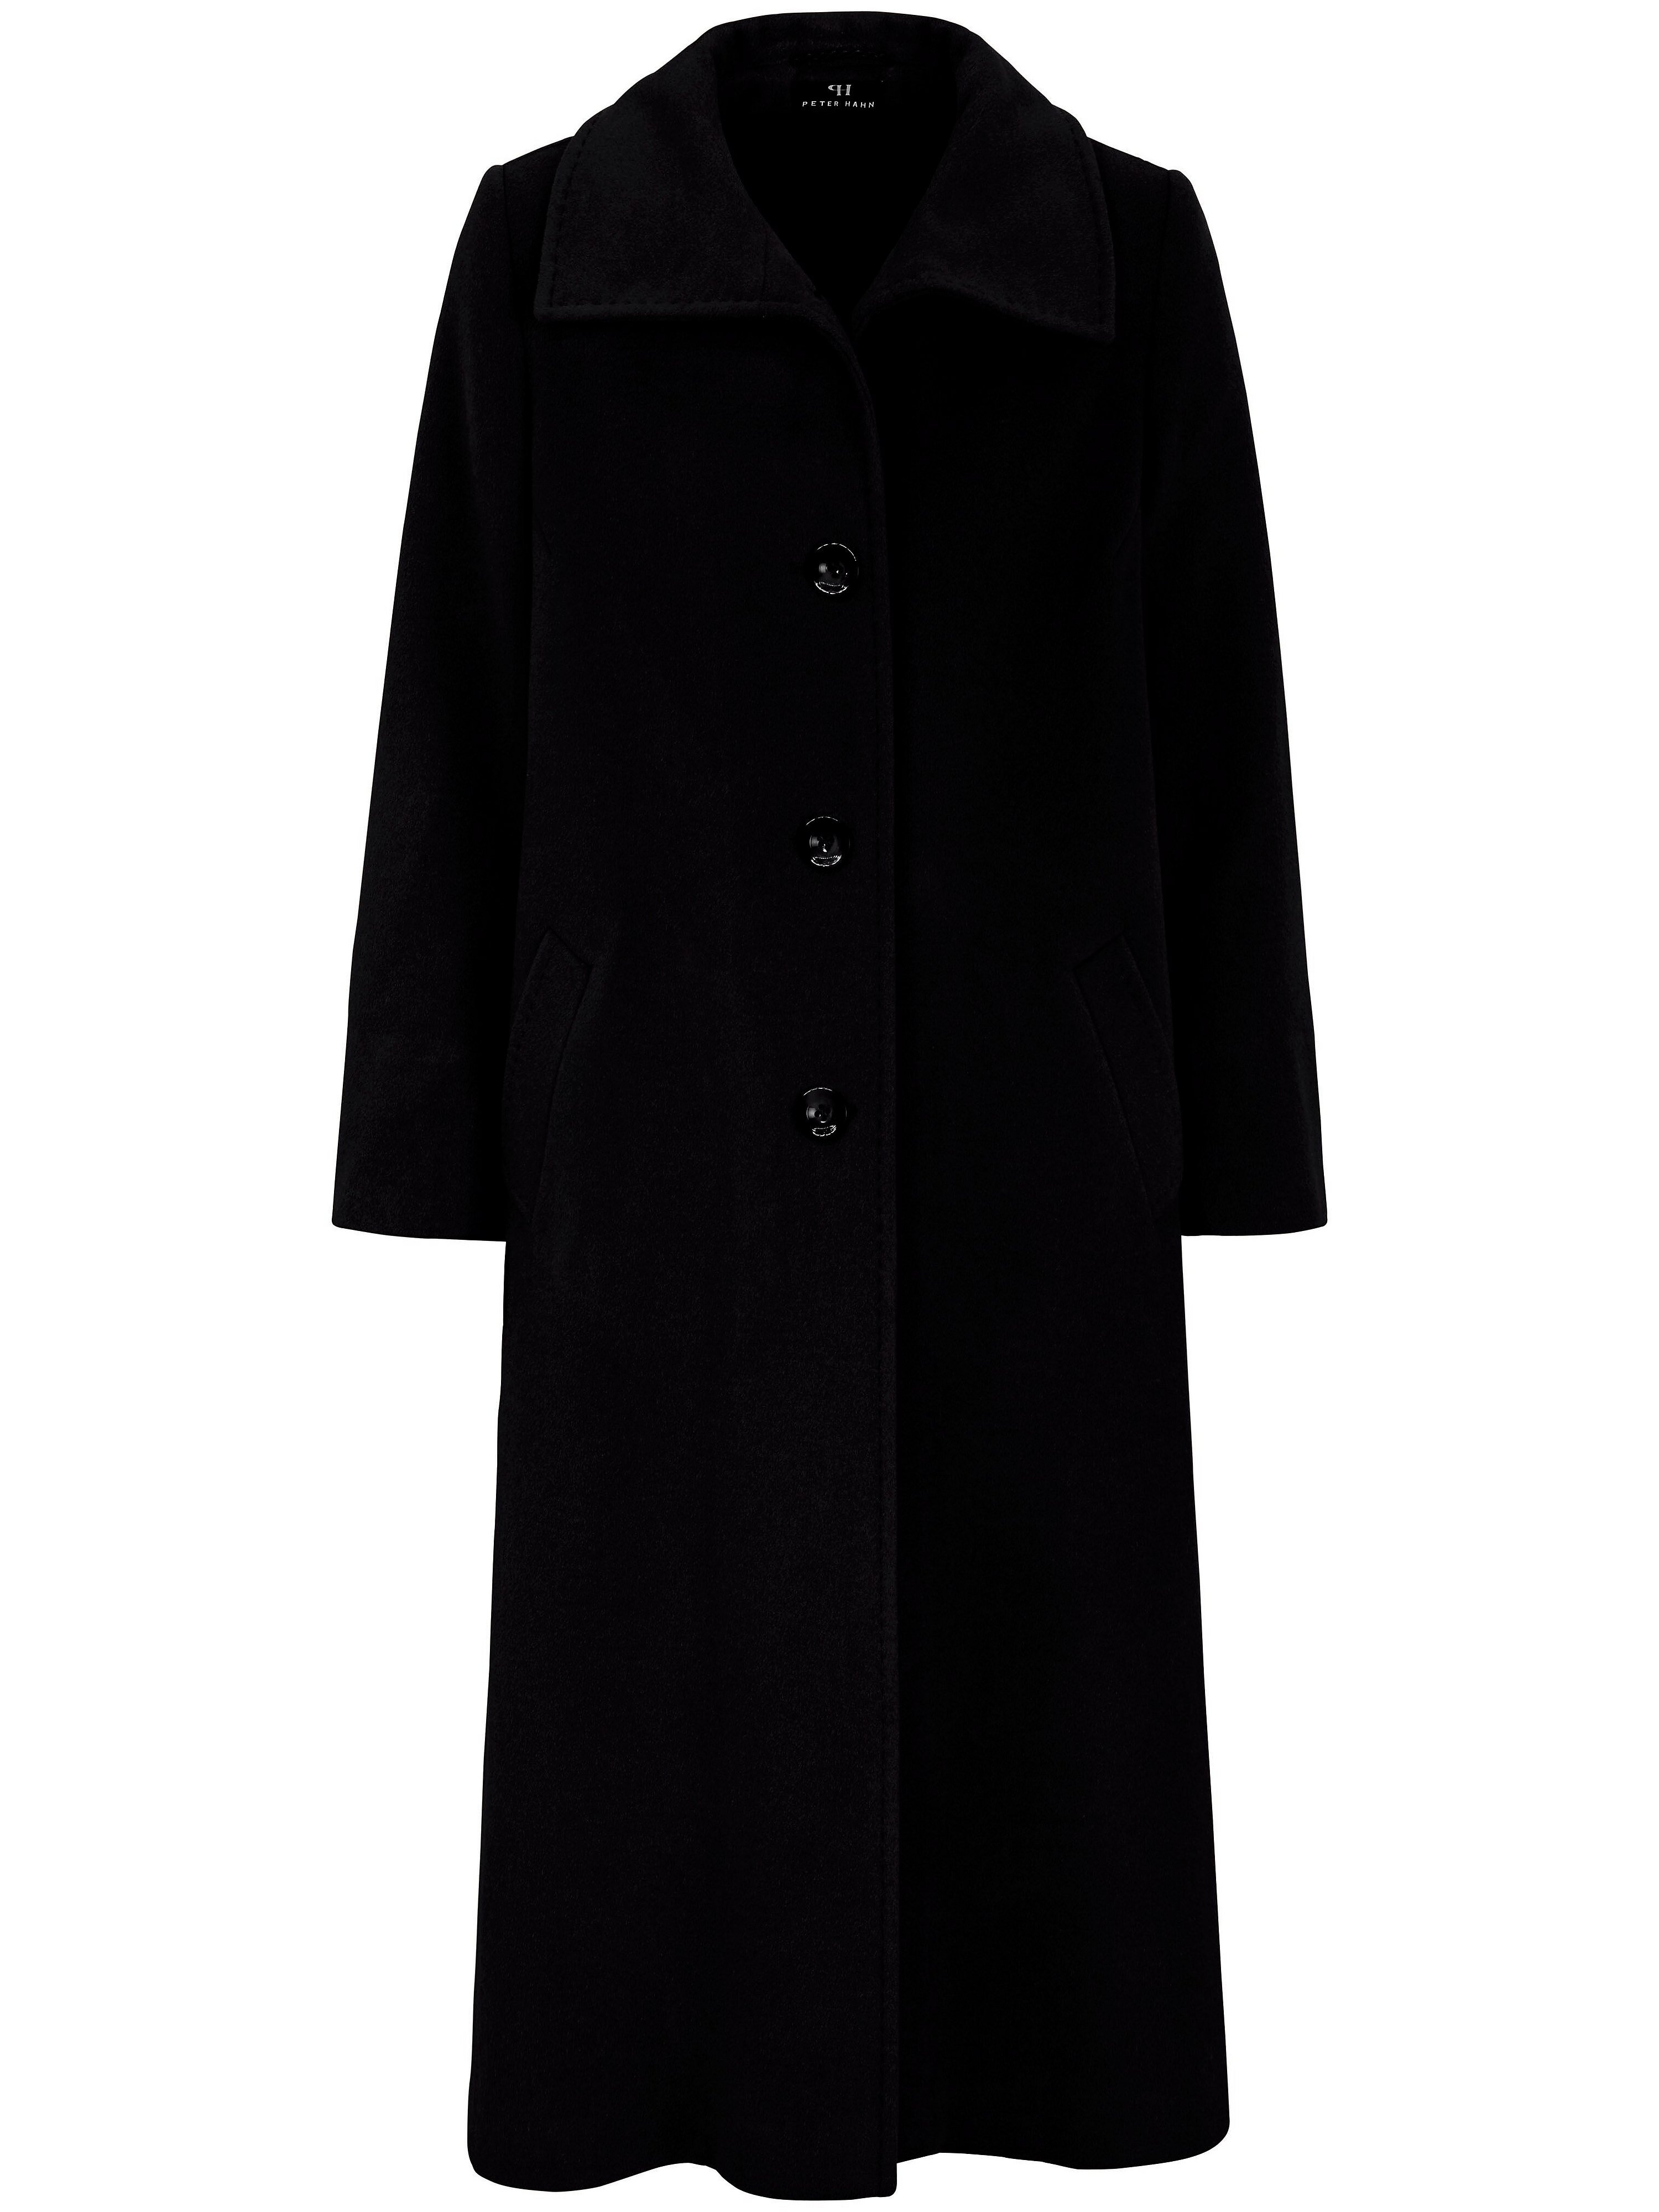 Le manteau coupe évasée  Peter Hahn noir taille 40